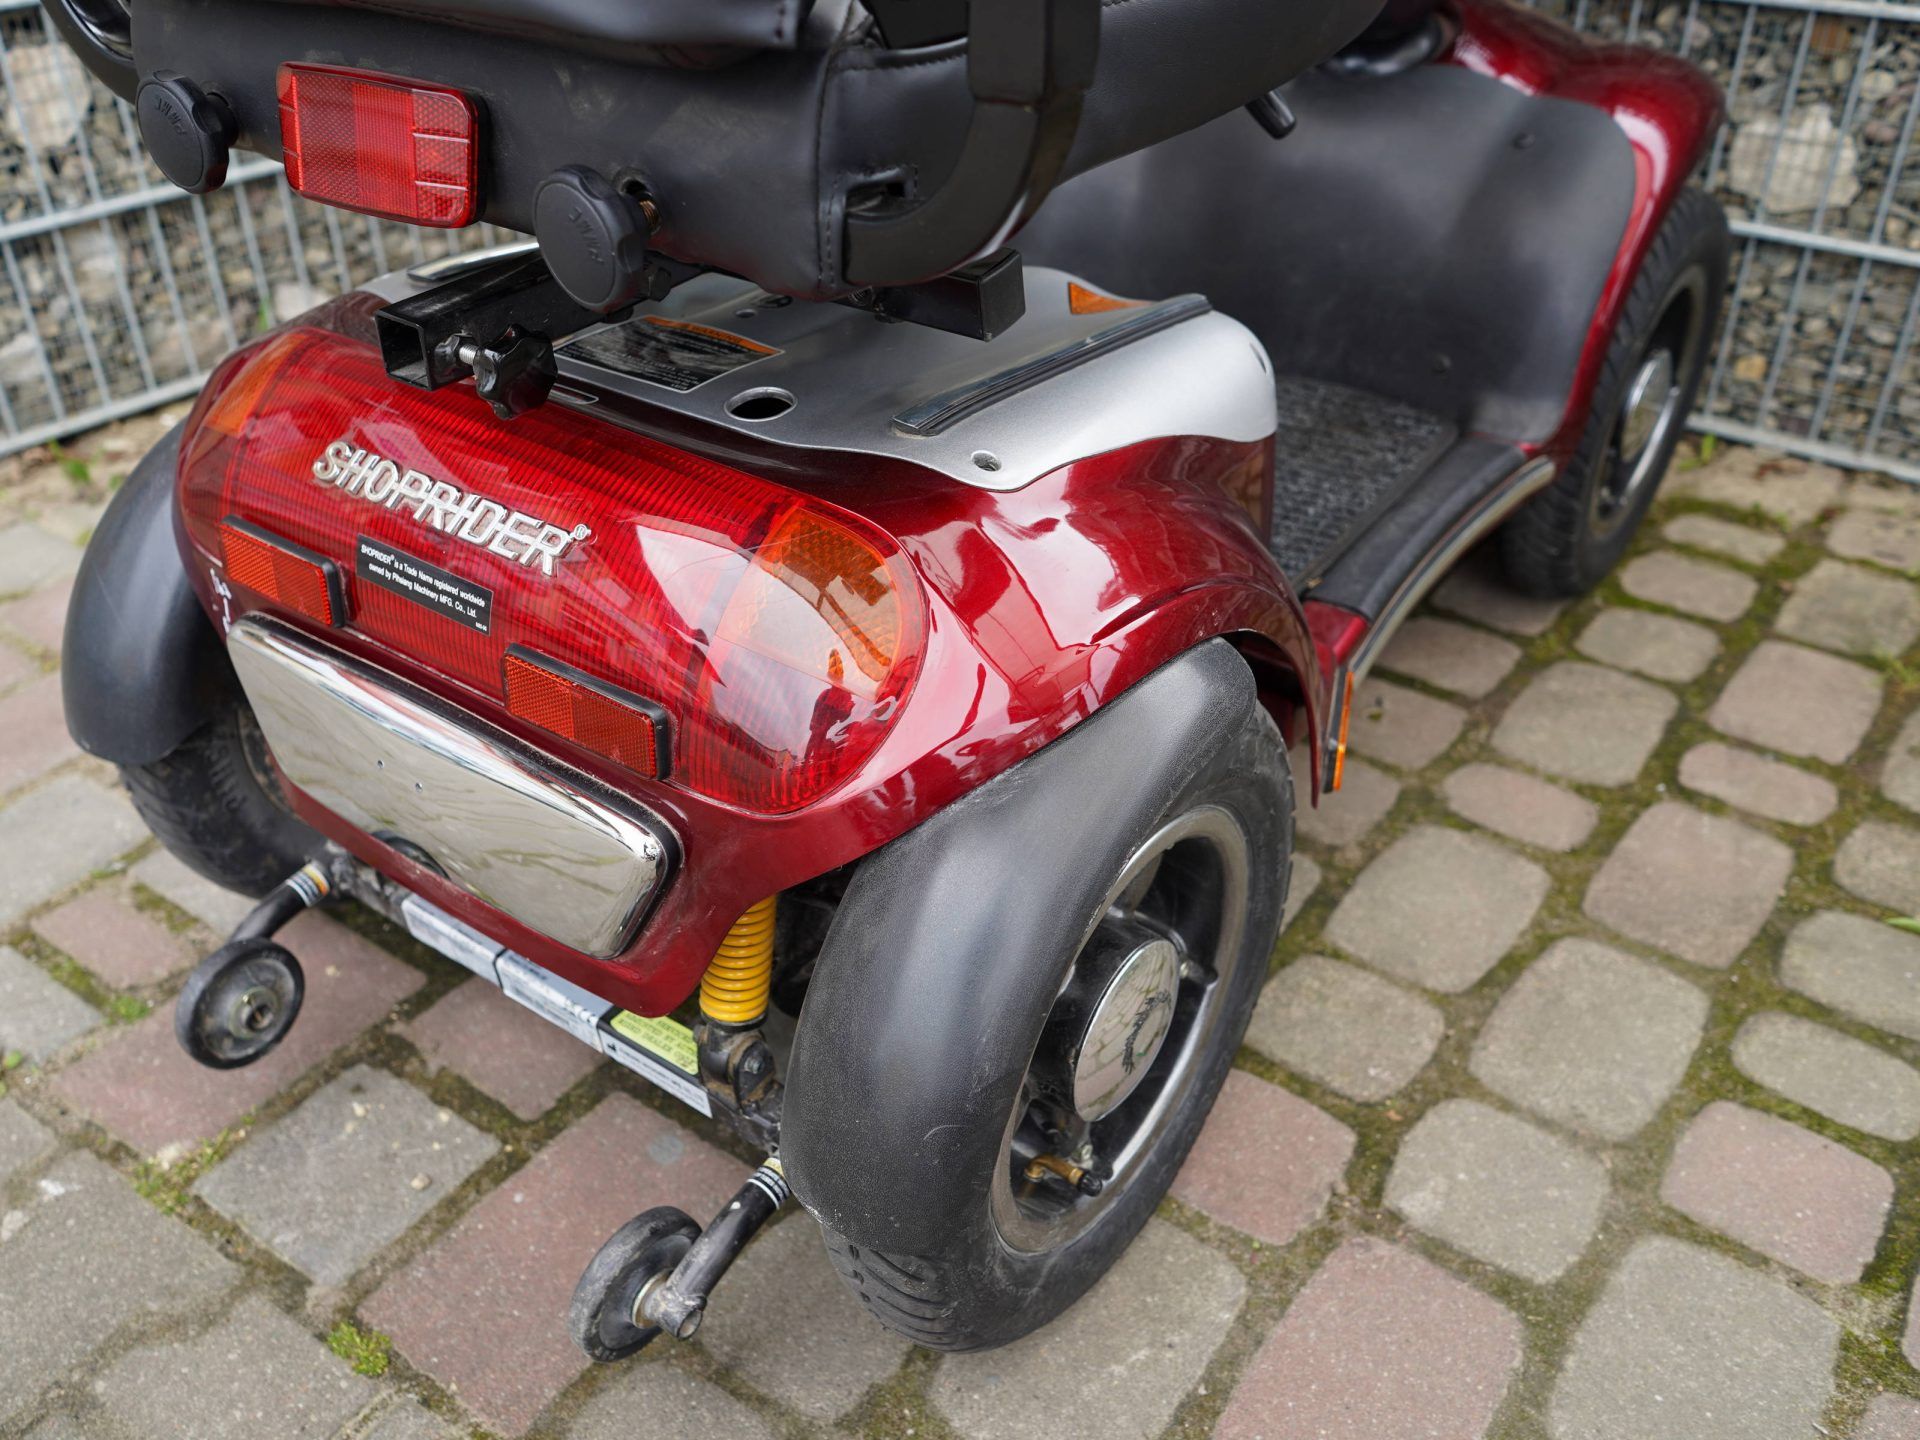 Shoprider Legend 2 skuter inwalidzki elektryczny pojazd